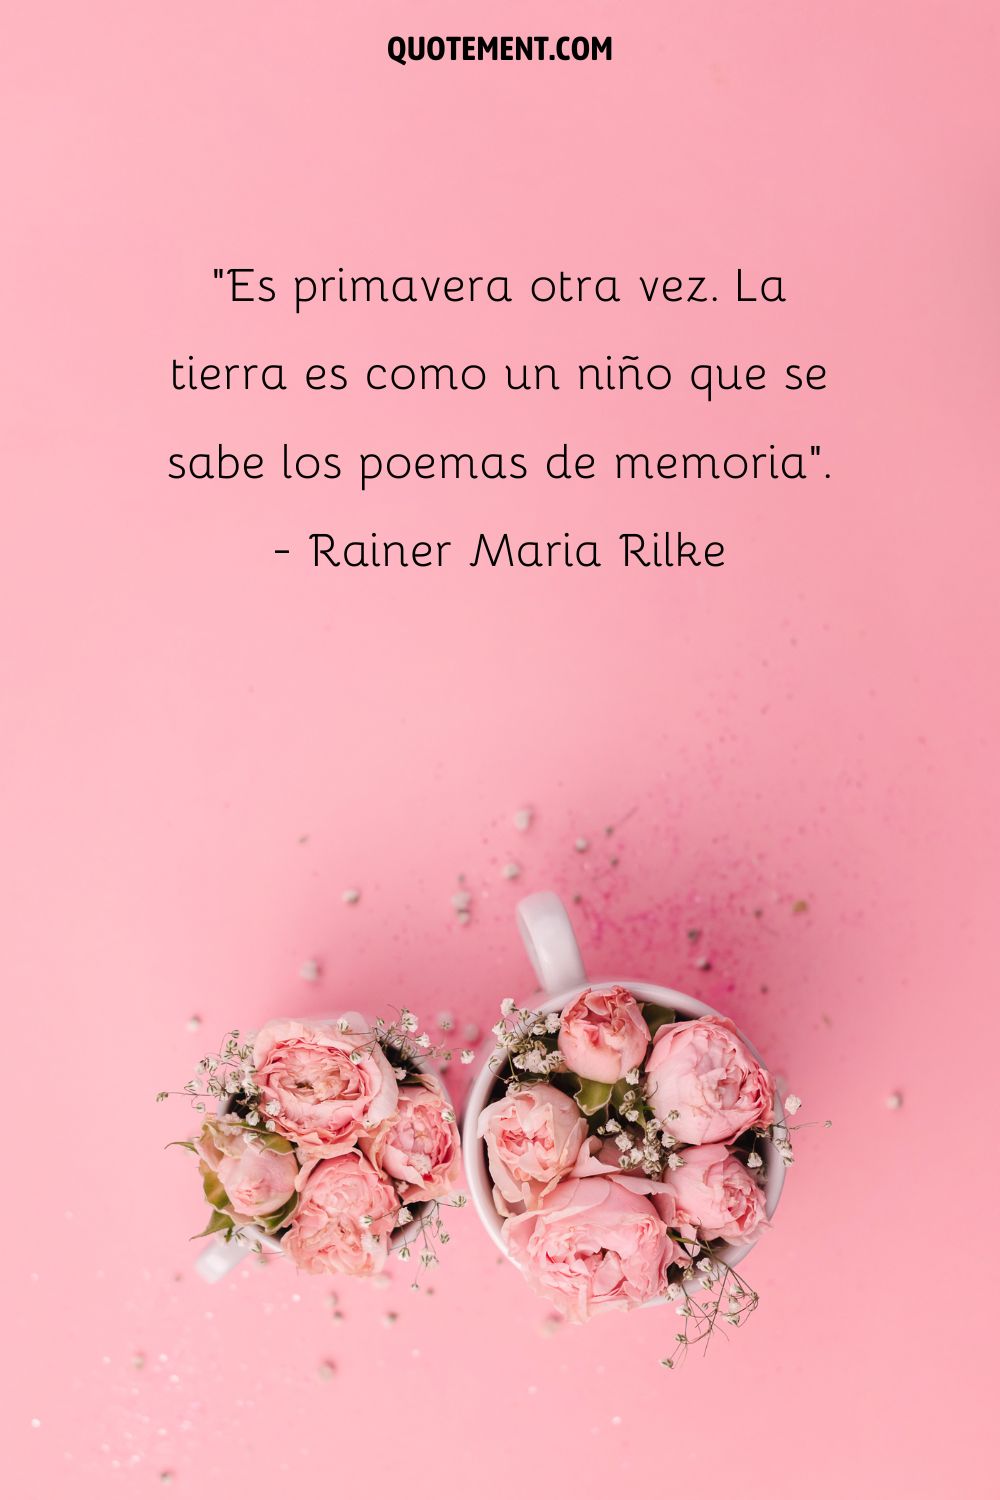 Es primavera otra vez. La tierra es como un niño que se sabe los poemas de memoria. - Rainer Maria Rilke